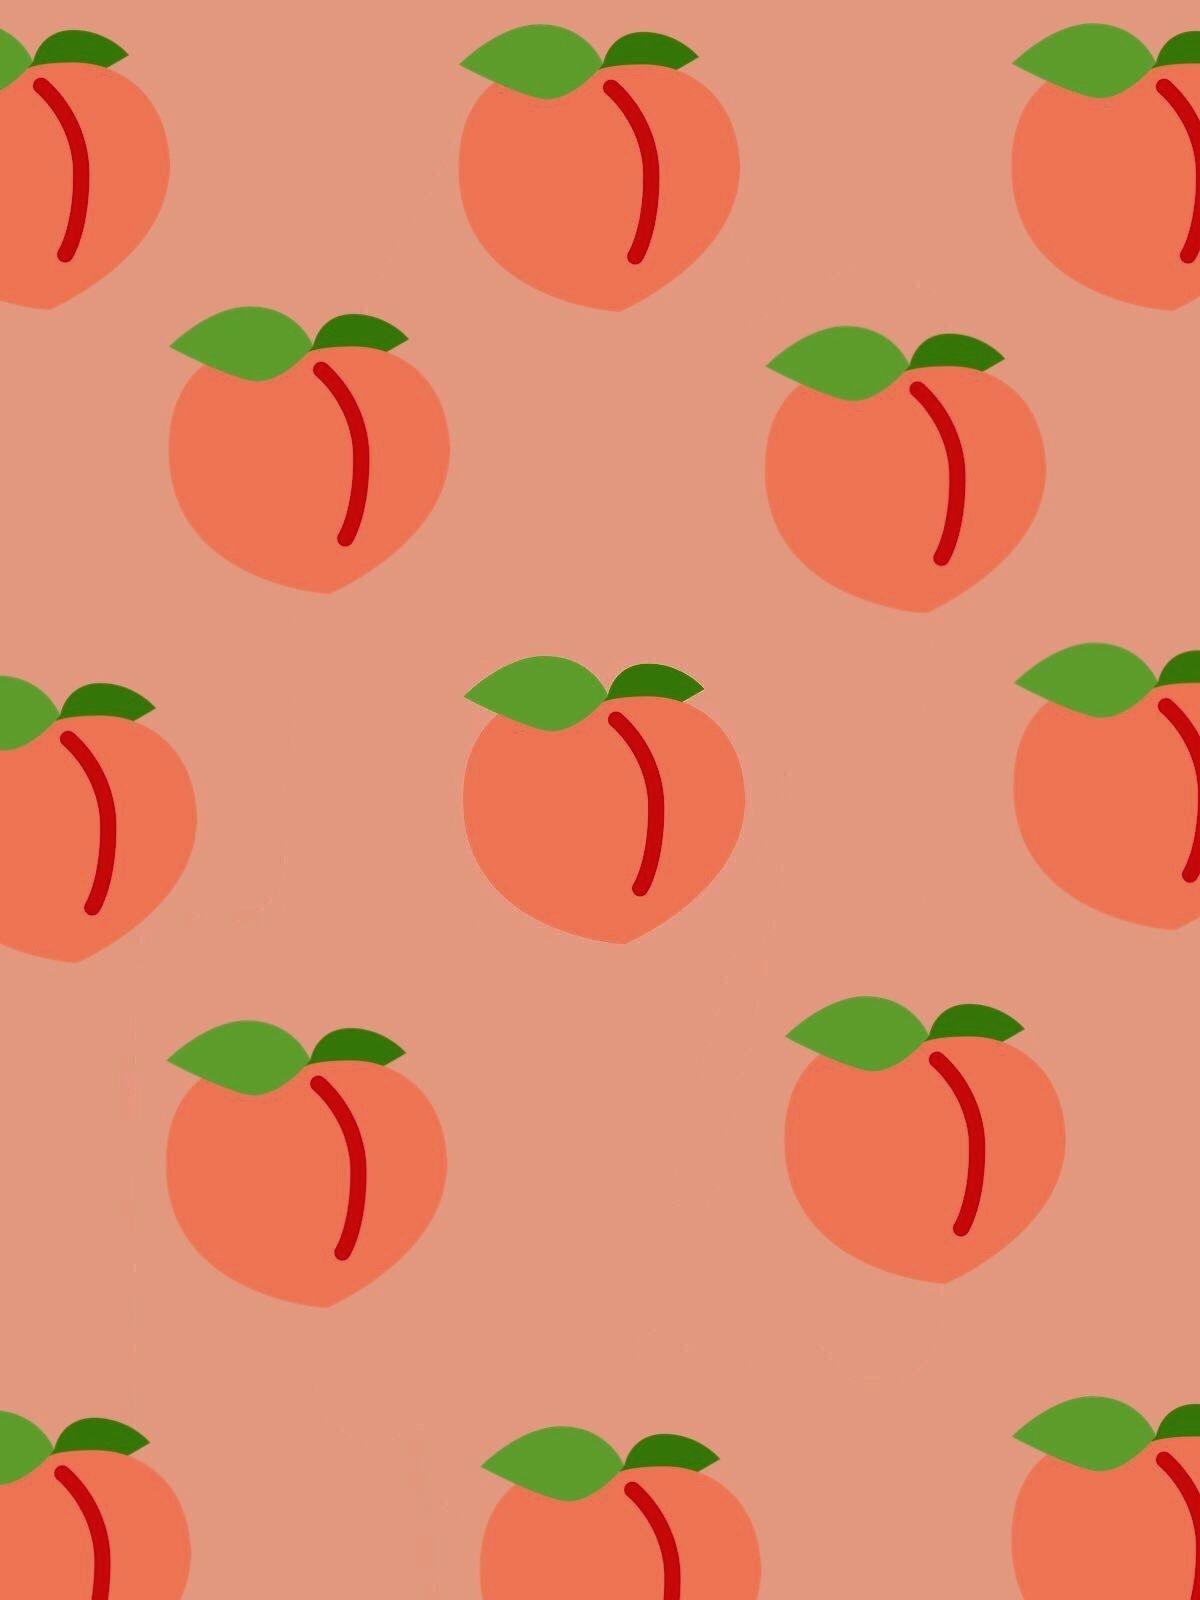 Cute Fruit Wallpaper Tumblr Peaches